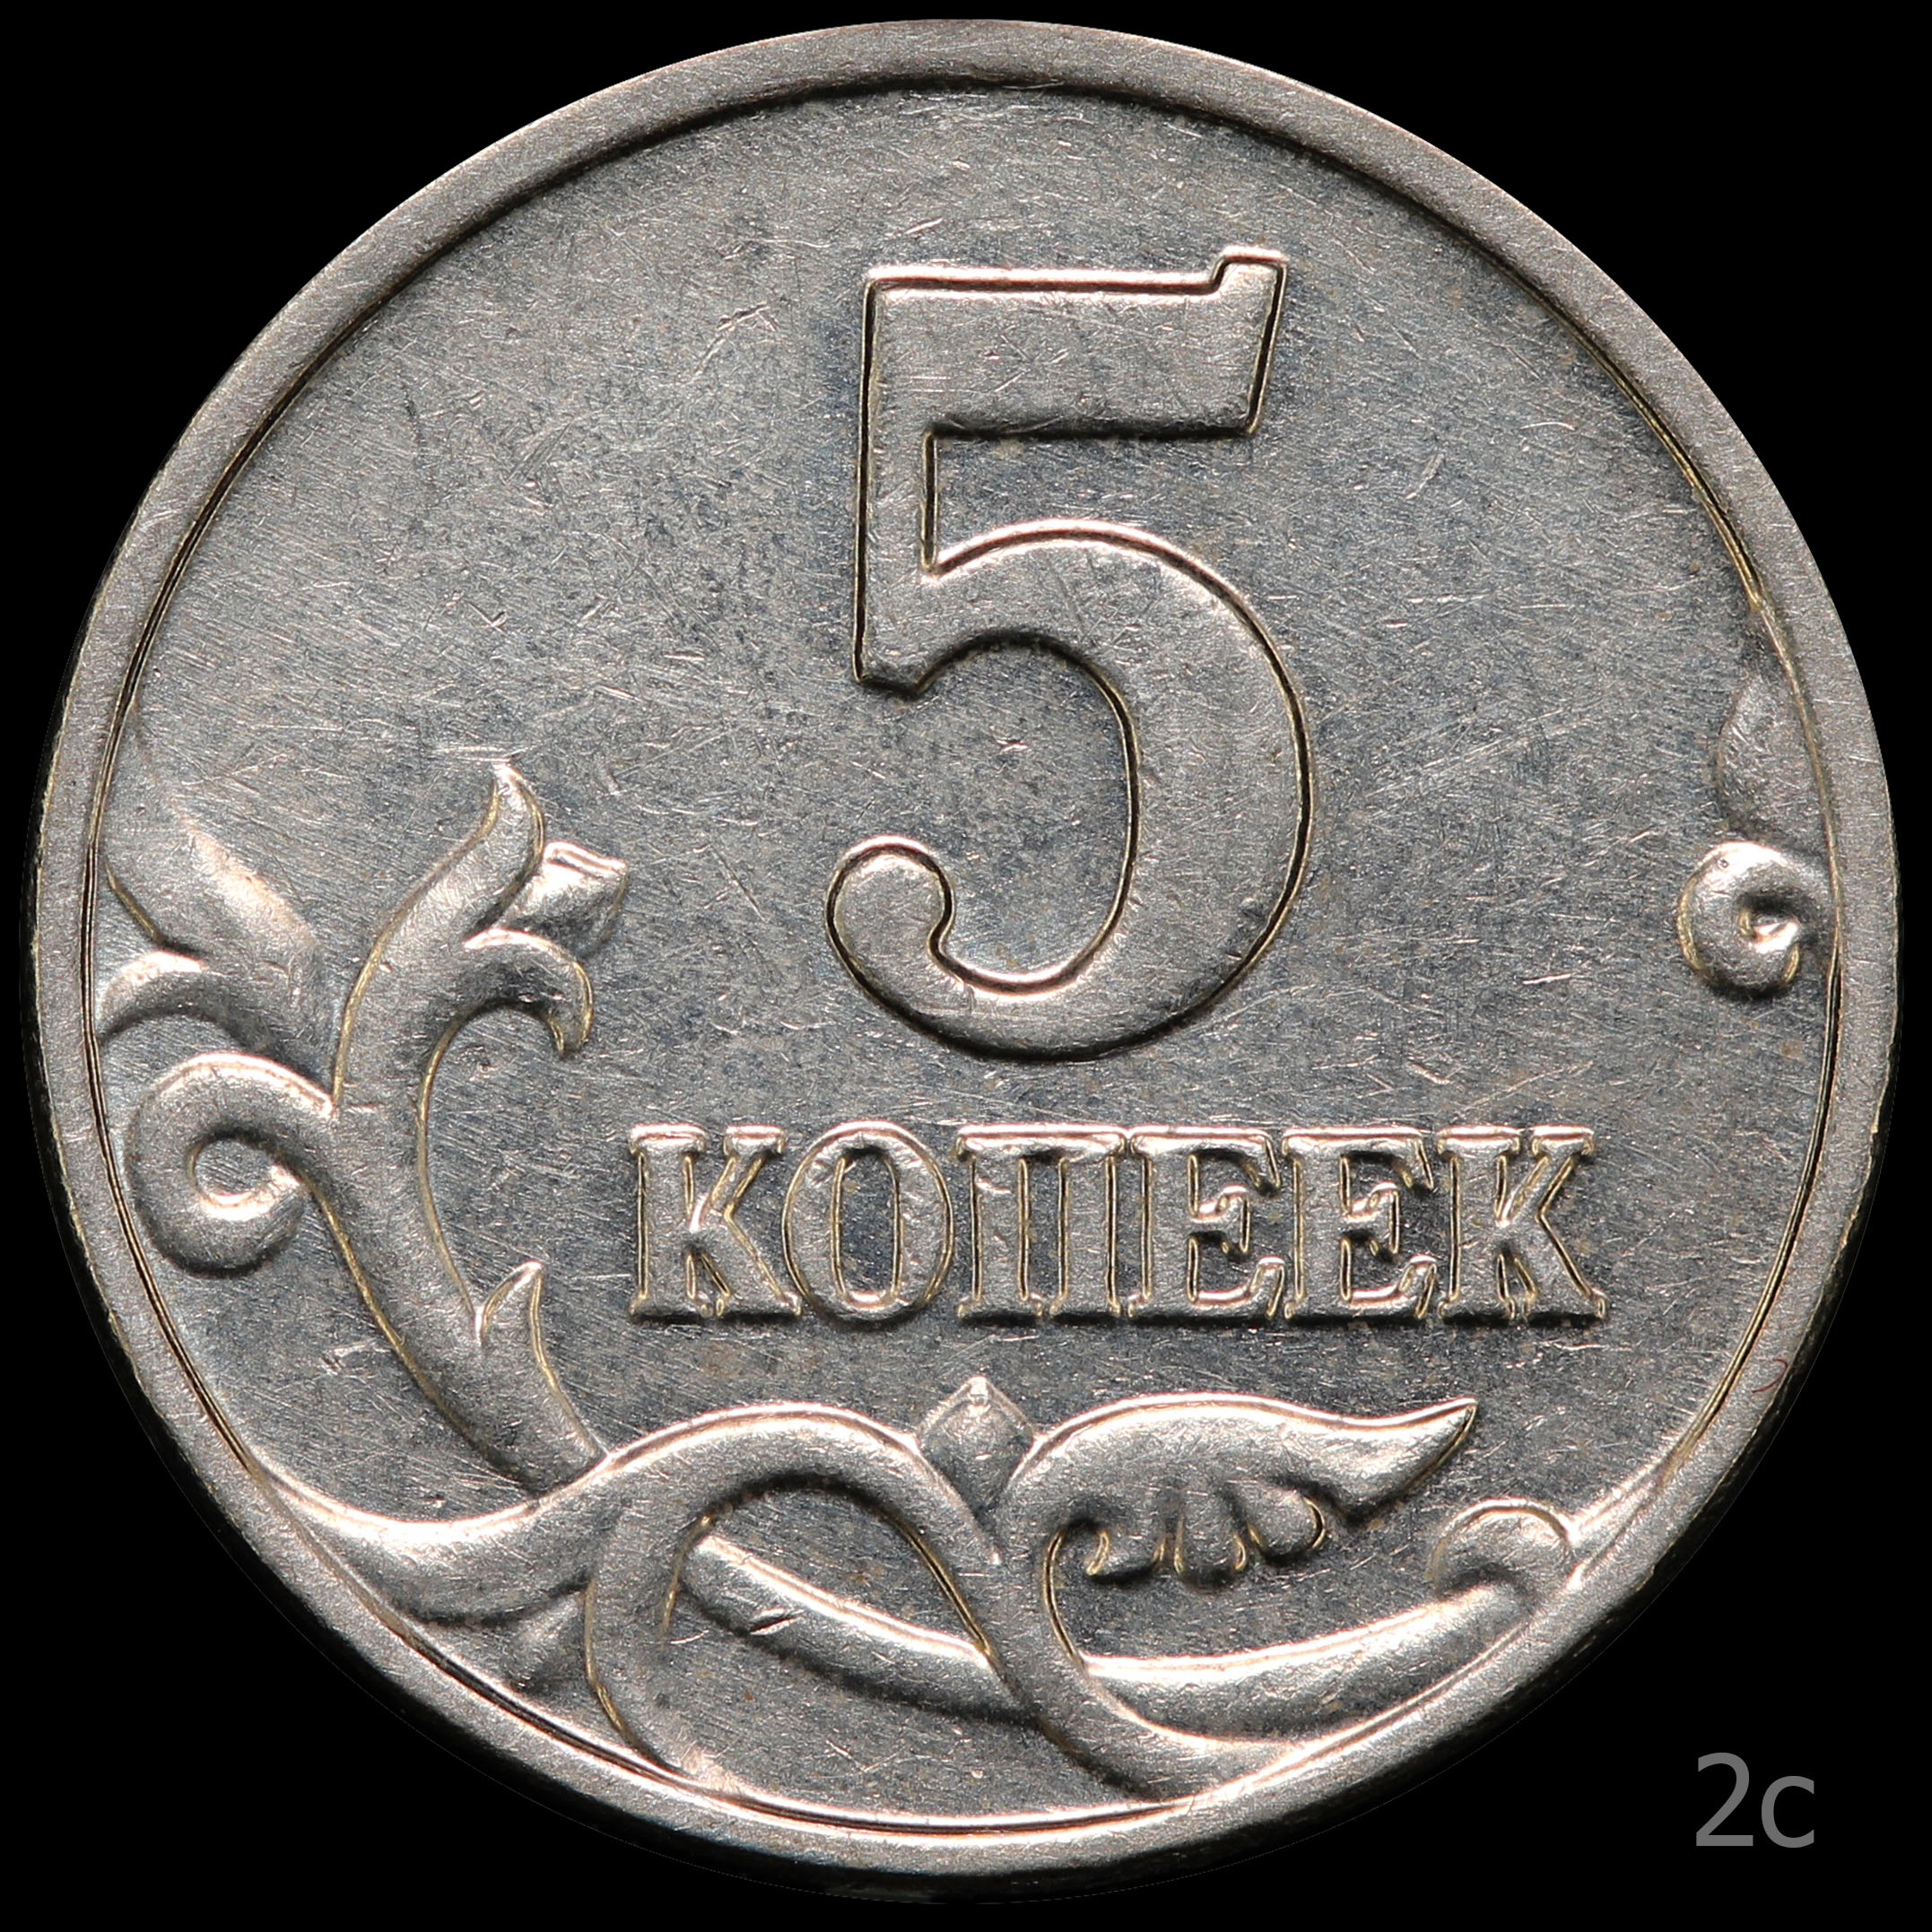 5 копеек 61. 5 Копеек 2003. 5 Копеек 2003 обычная. Штемпель для монет.